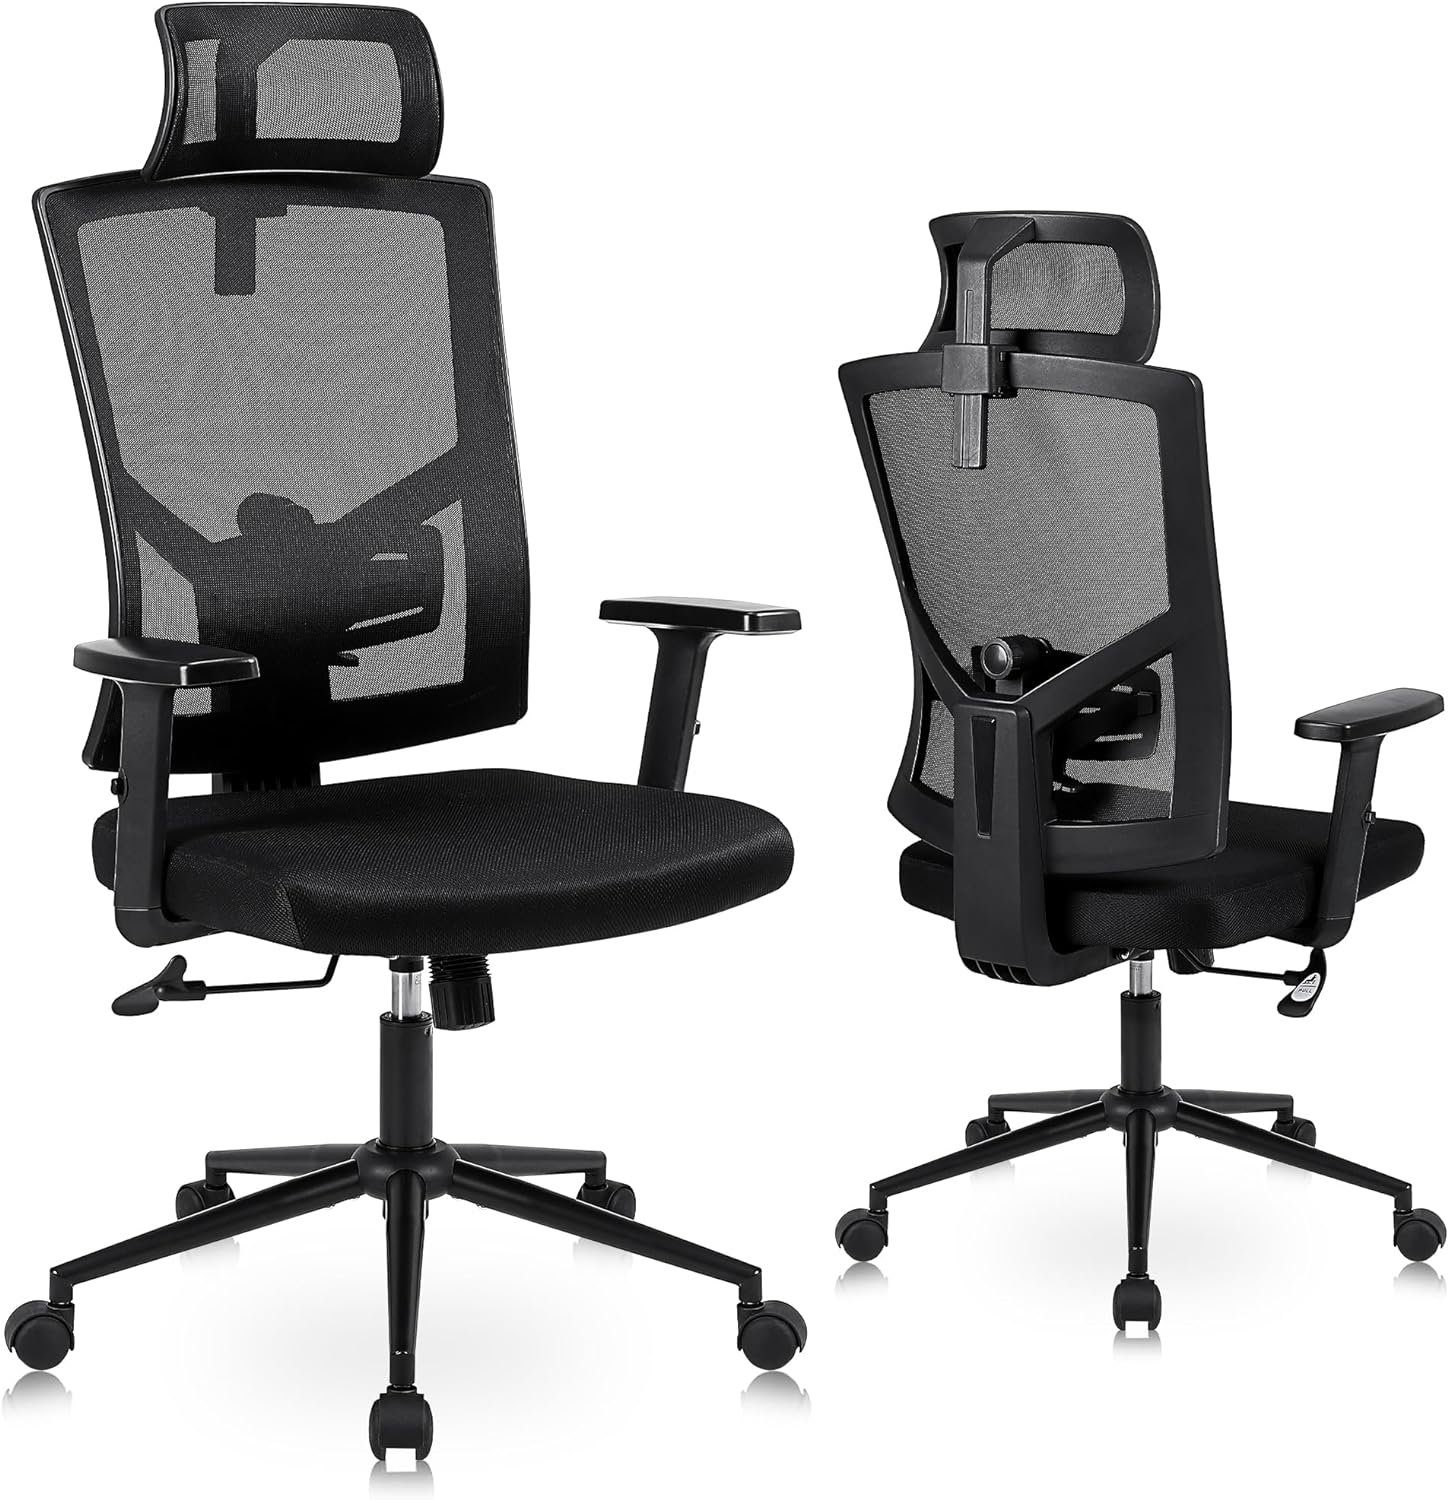 Chair Office mit Bürostuhl, Kopfstütze und Schreibtischstuhl Verstellbarer Youhauchair